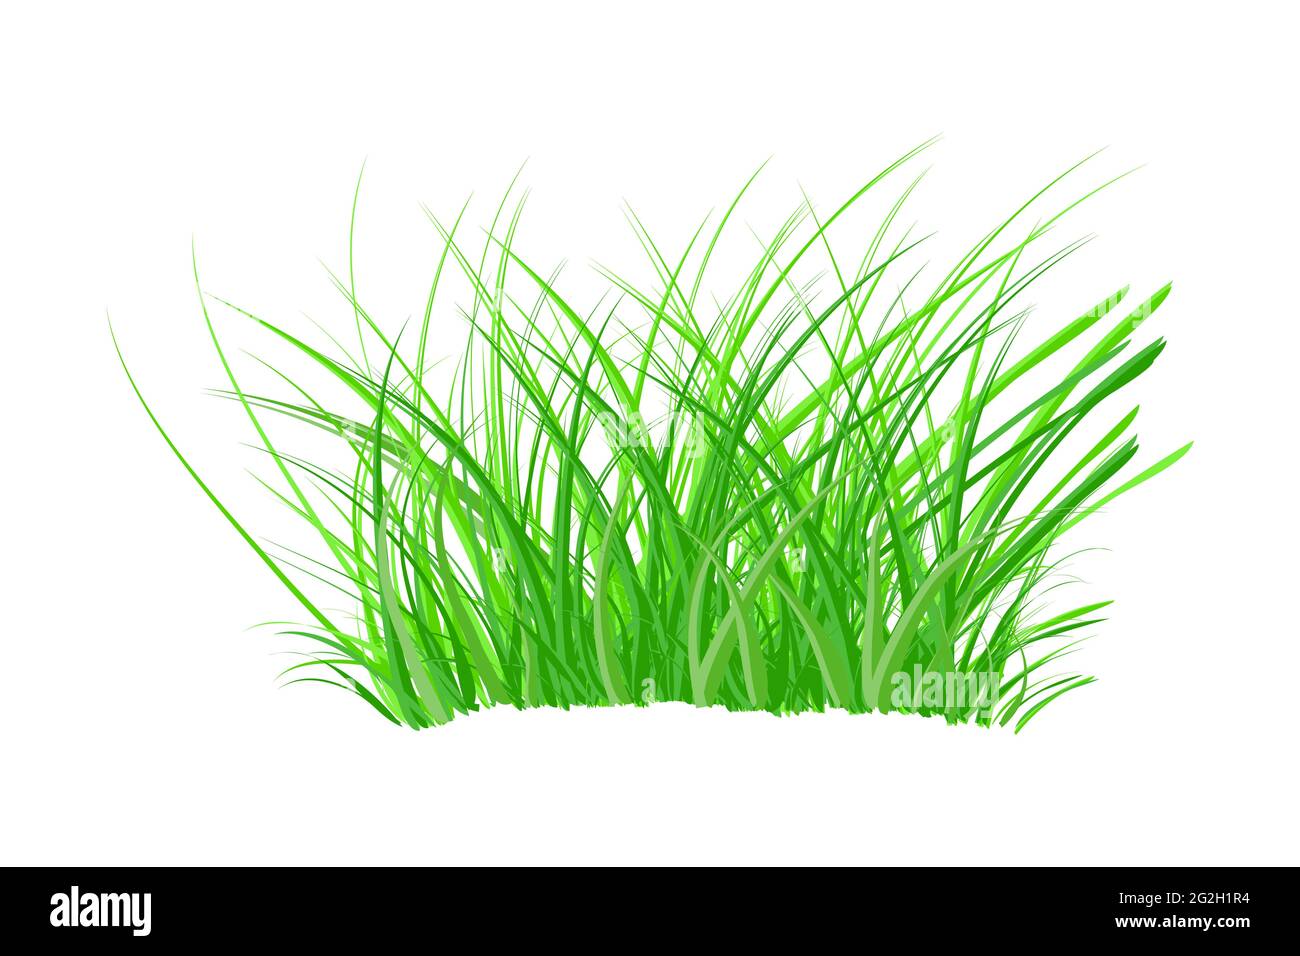 Grasbüschel isoliert auf weißem Hintergrund. Frühlingsbusch mit frischem Gras. Grünes dickes Unkraut. Großer Stoßsack. Gestalterisches Element der Natur. Vektorgrafik Stock Vektor